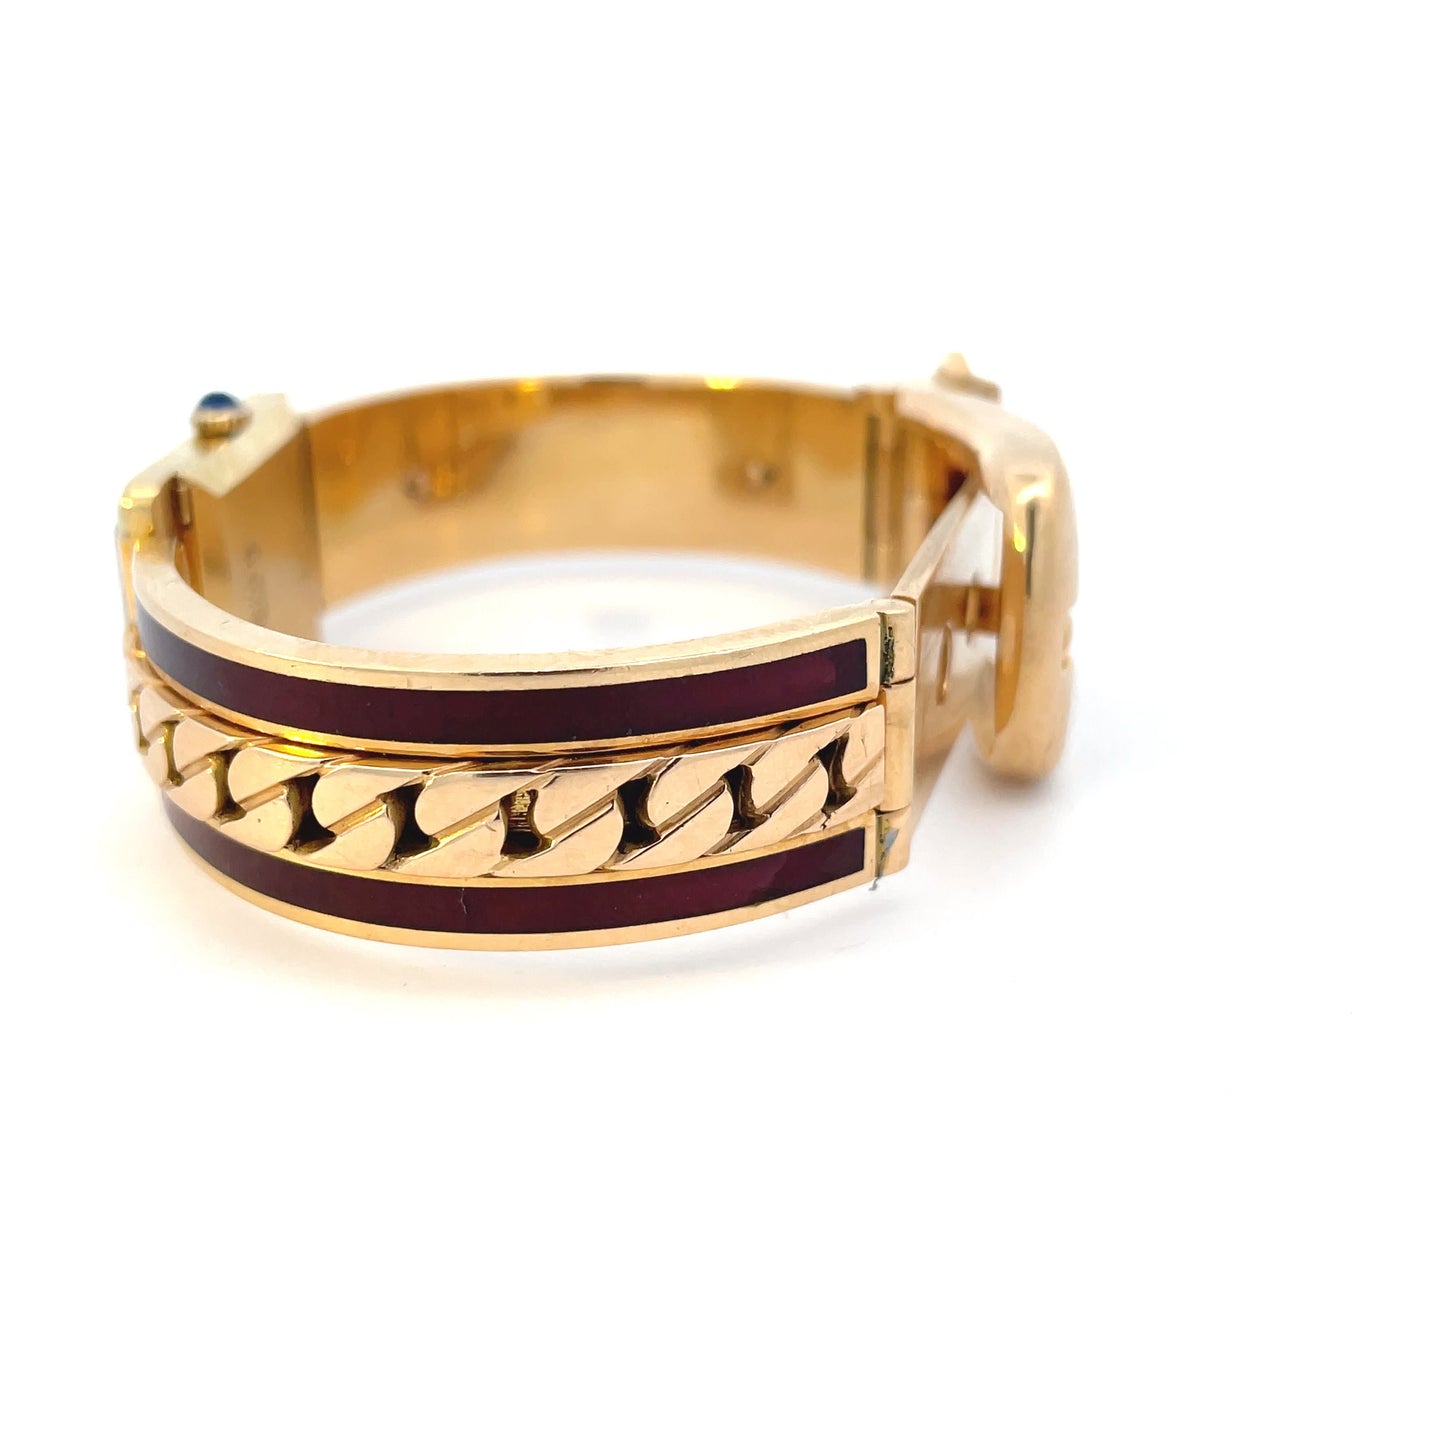 Gucci 1970s 18KT Yellow Gold & Enamel Bracelet Watch side view